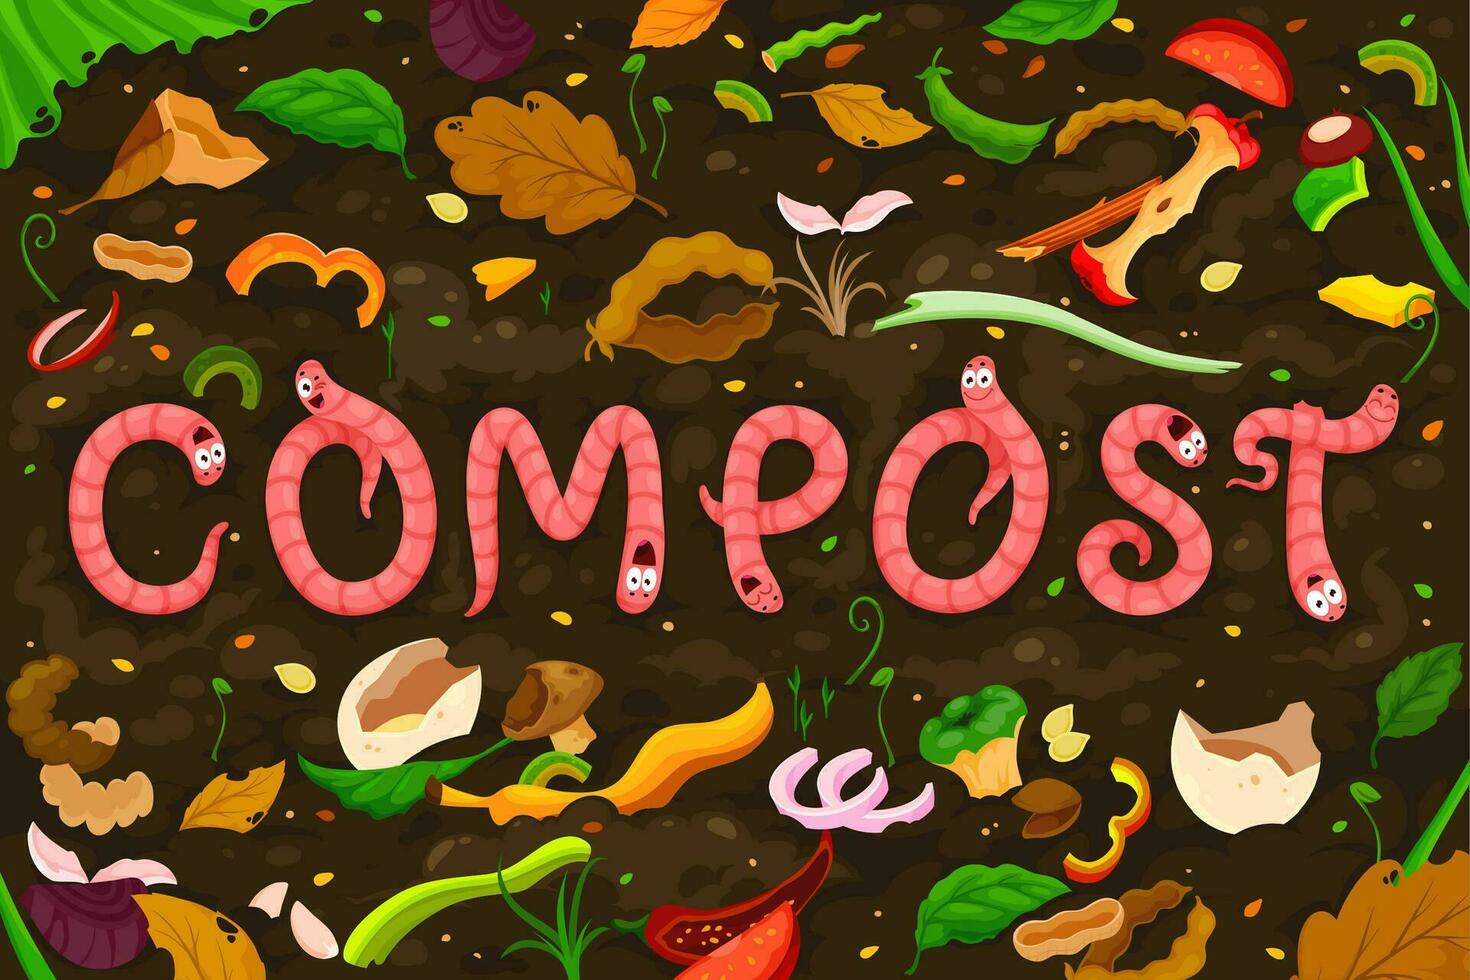 dessin animé Terre Ver de terre personnages, compost sol humus vecteur